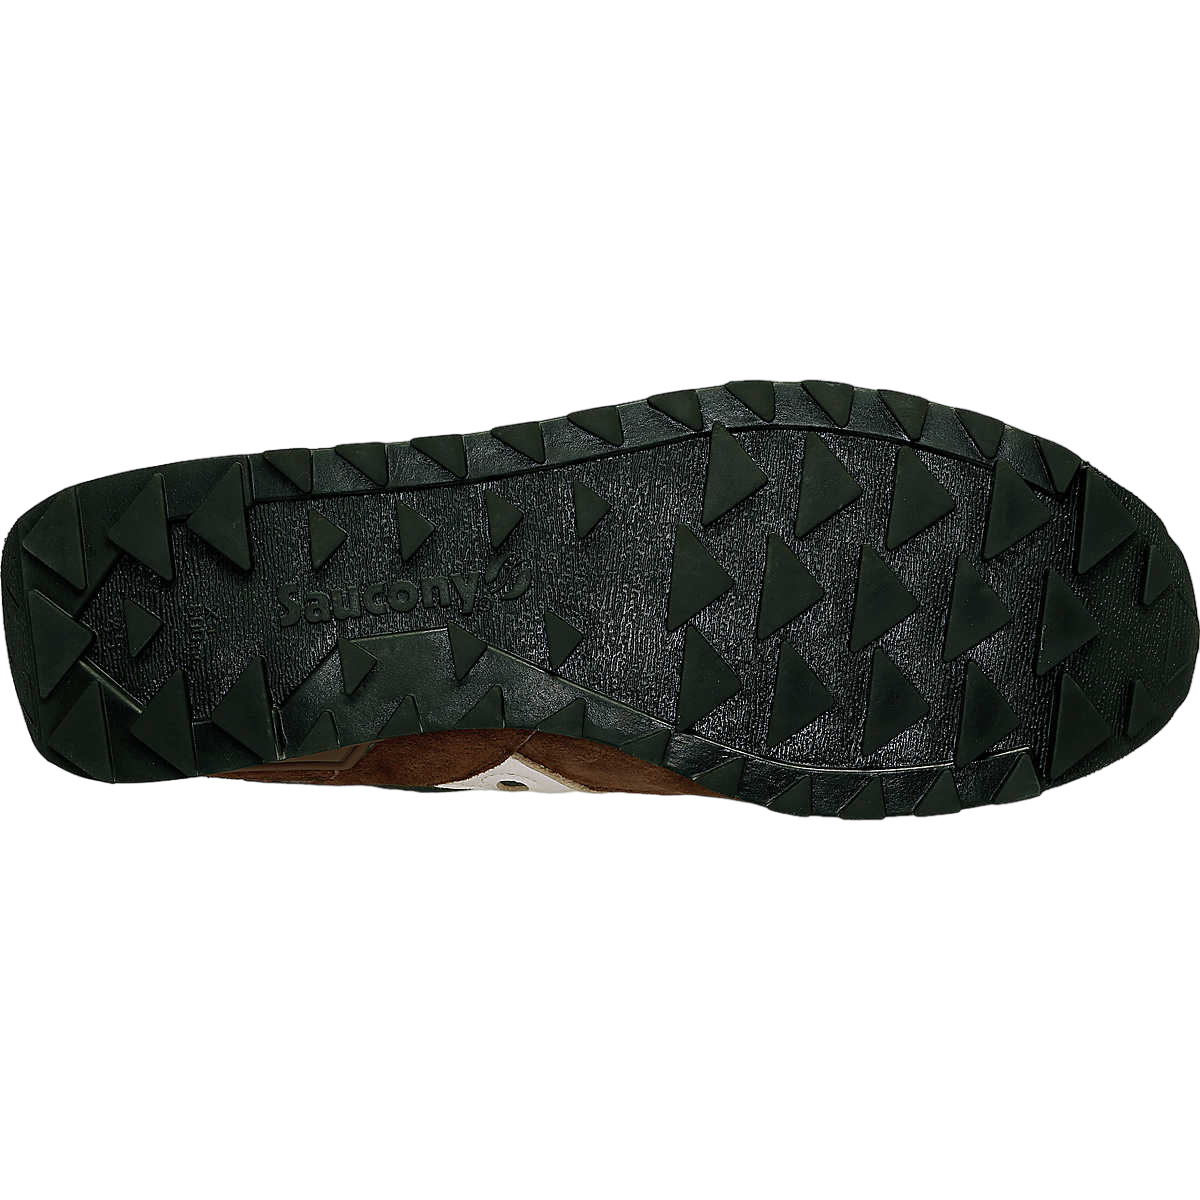 Saucony Original scarpa sneakers da uomo Shadow  S70780-3 marrone verde